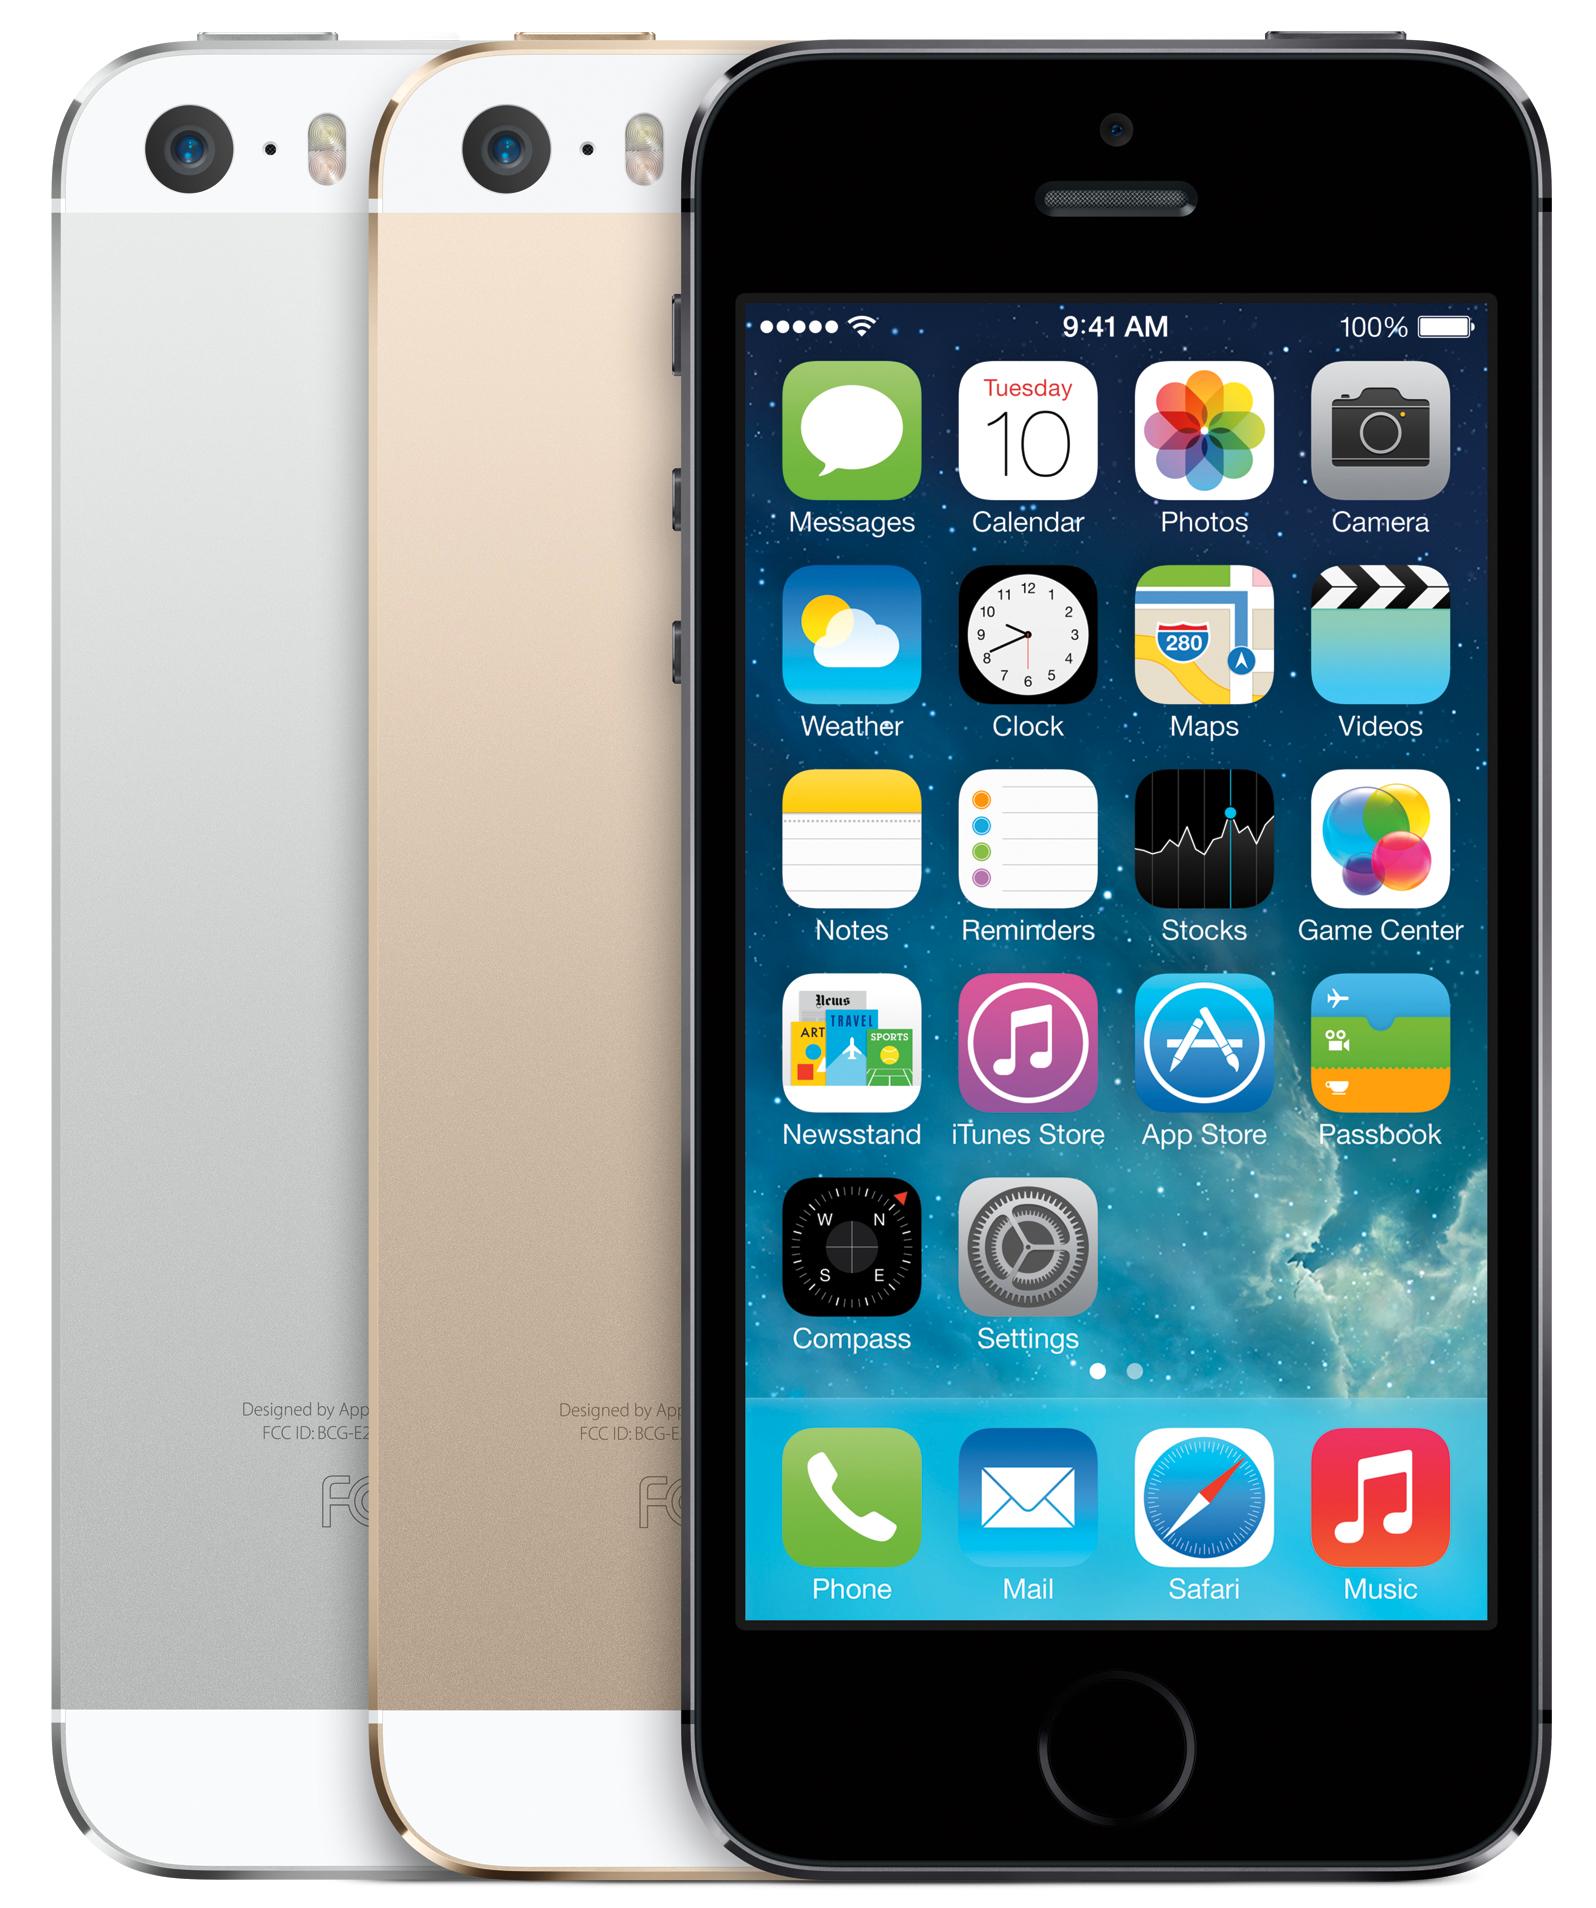 iPhone 5S har det minste batteriet, og er også den telefonen du må lade hyppigst.Foto: Apple